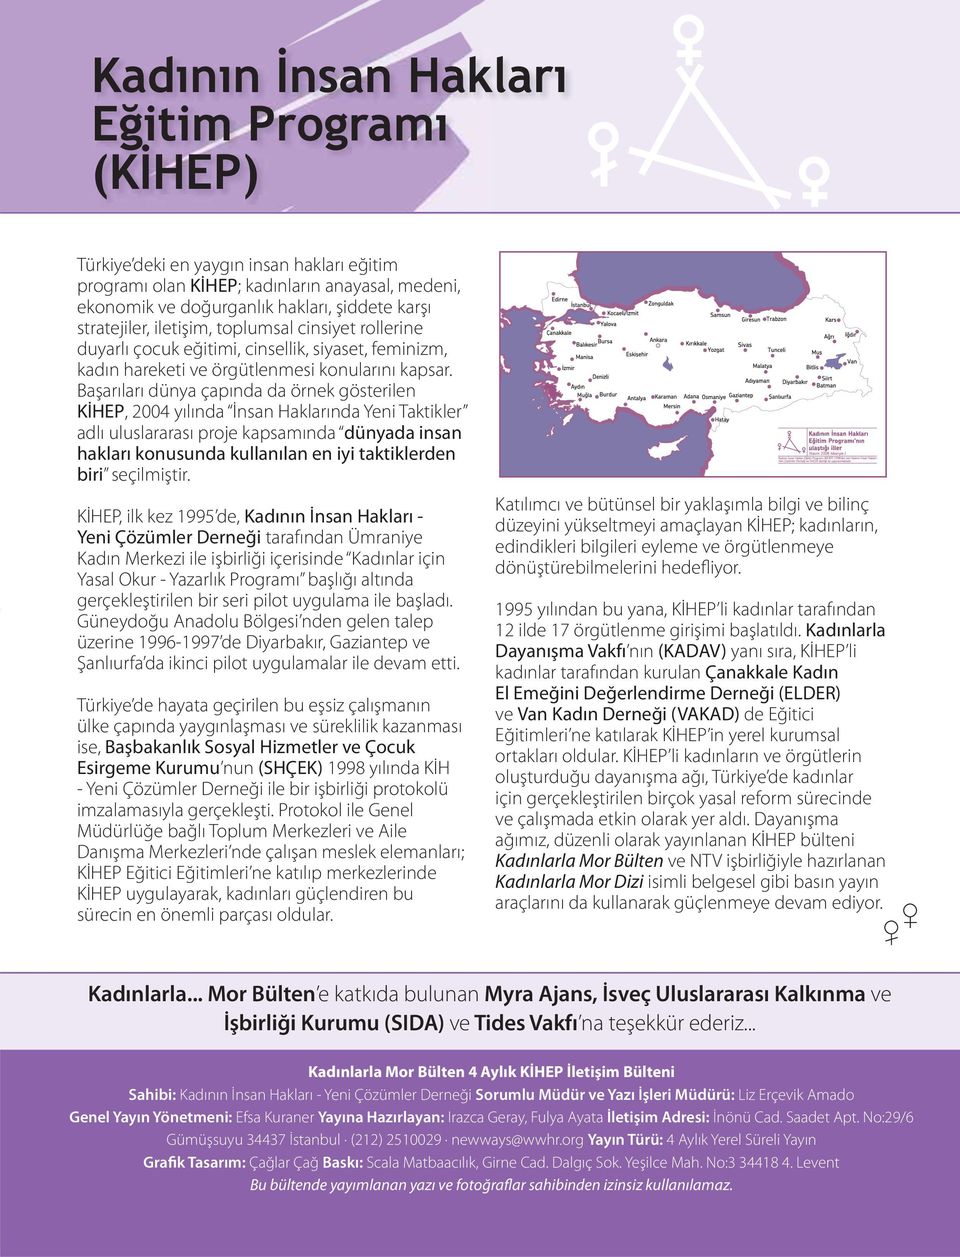 Başarıları dünya çapında da örnek gösterilen KİHEP, 2004 yılında İnsan Haklarında Yeni Taktikler adlı uluslararası proje kapsamında dünyada insan hakları konusunda kullanılan en iyi taktiklerden biri